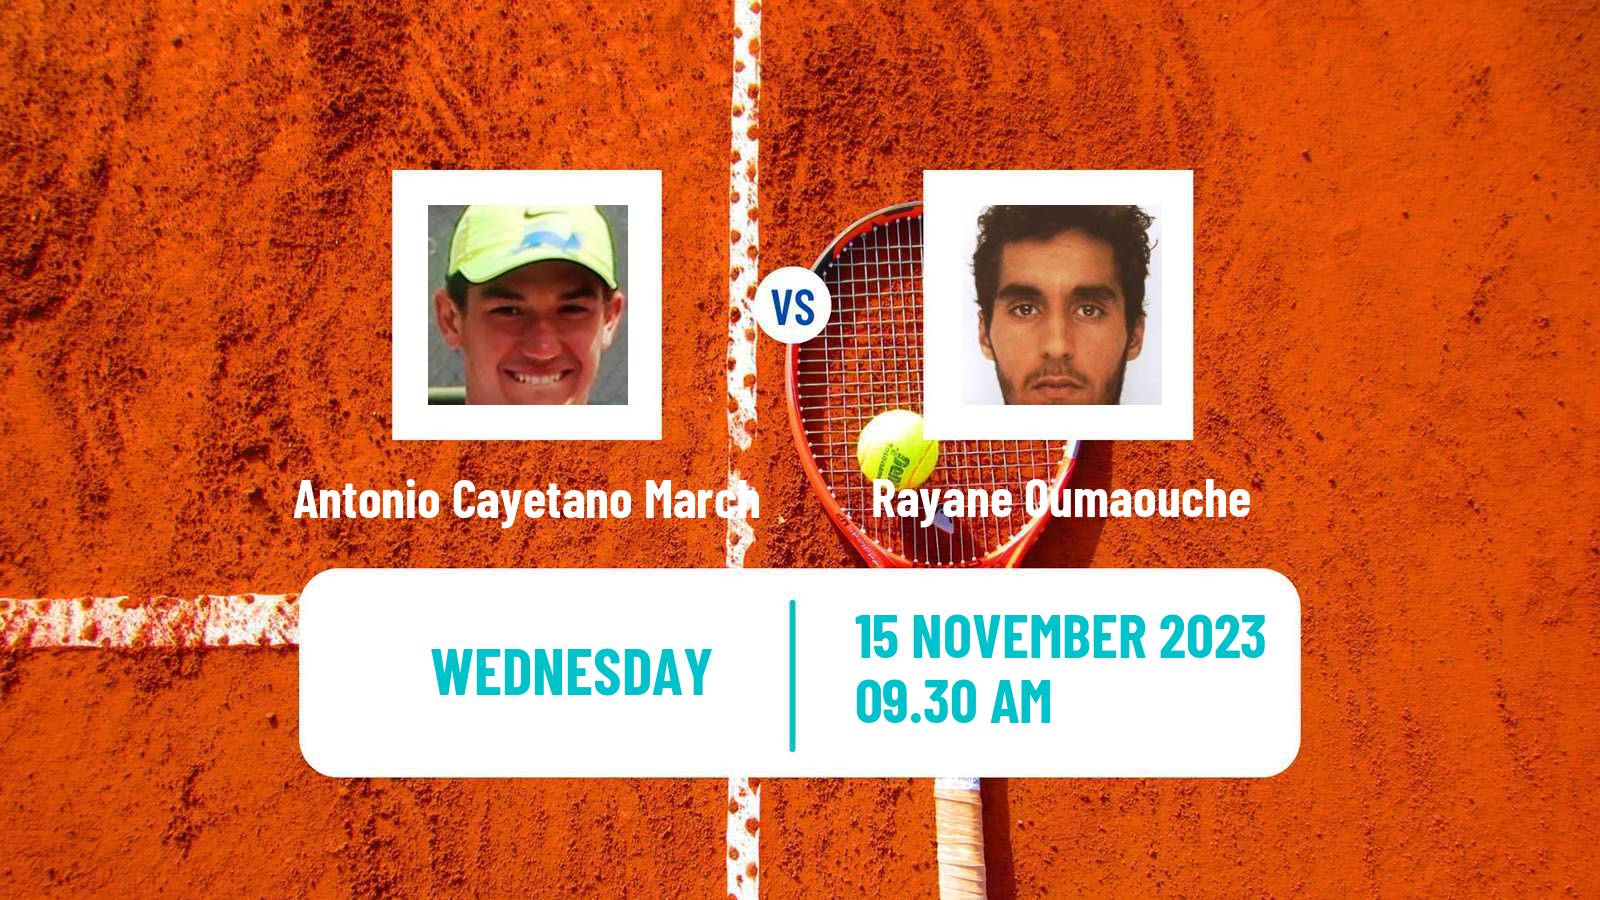 Tennis ITF M25 Vale Do Lobo Men Antonio Cayetano March - Rayane Oumaouche